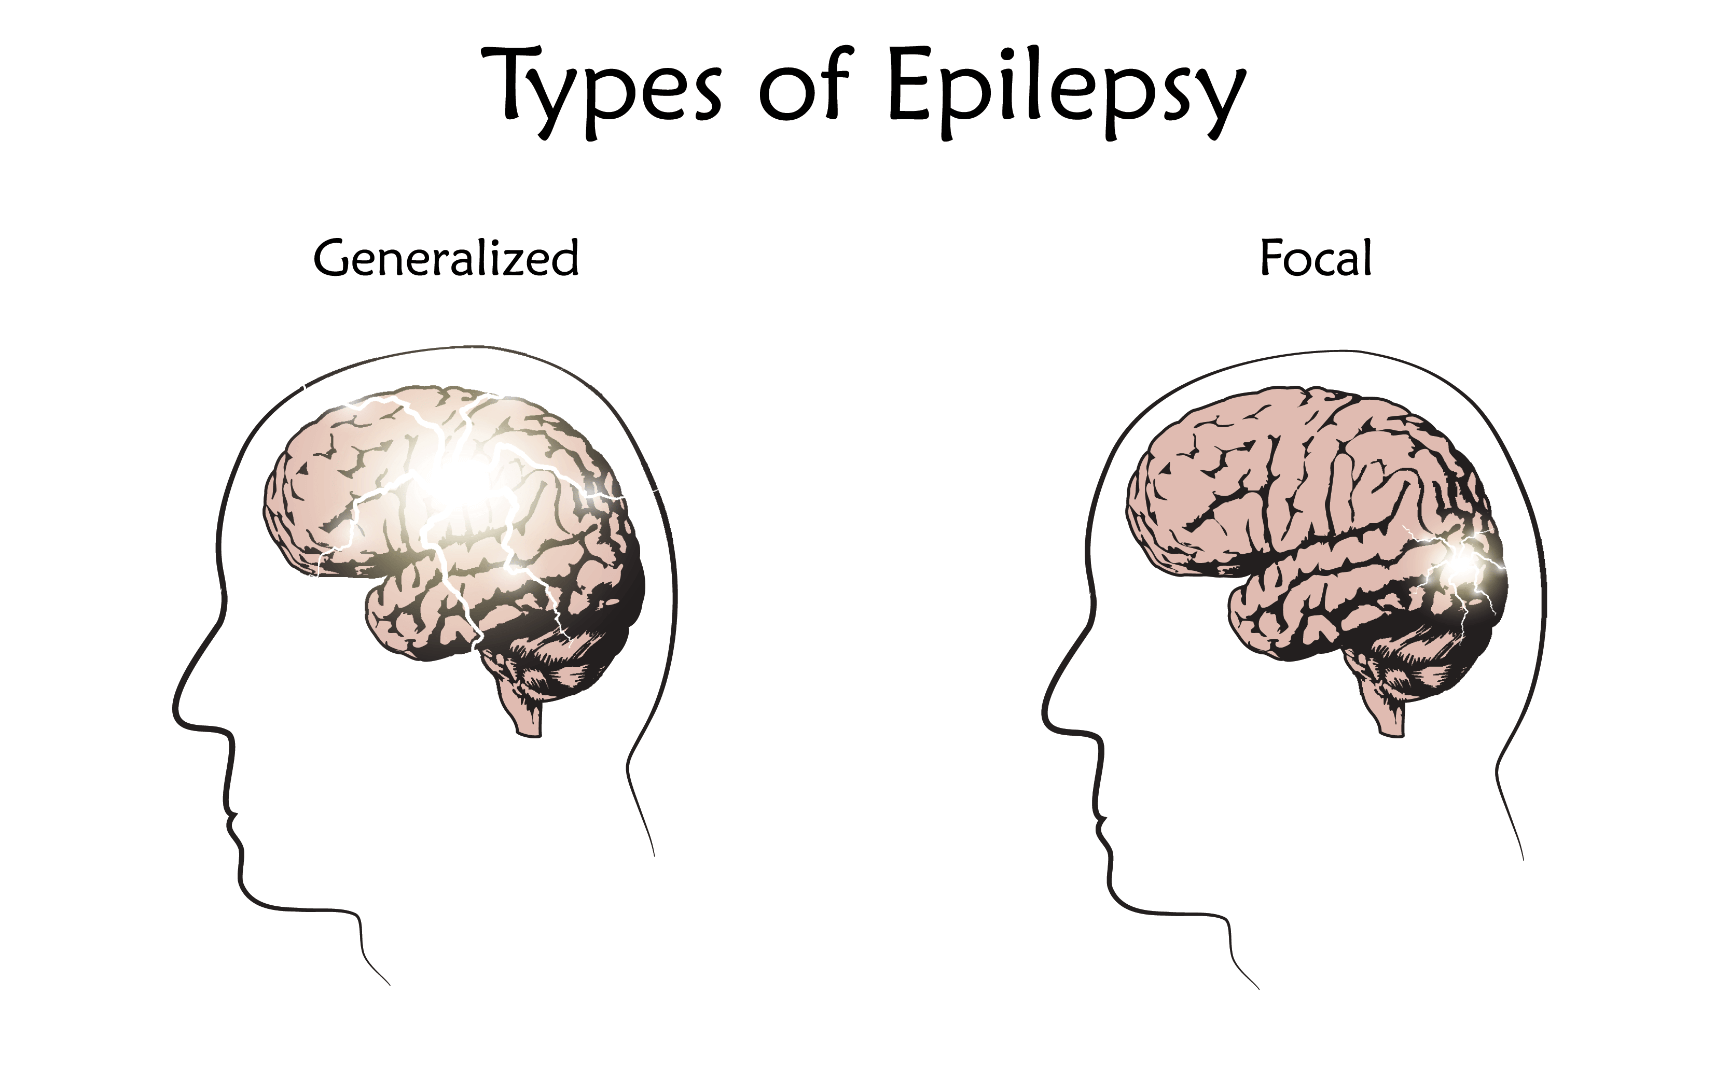 Фокальные припадки. Фокальная и генерализованная эпилепсия. Парциальные припадки эпилепсии. Фокальные эпилептические припадки. Эпилепсия мозг.